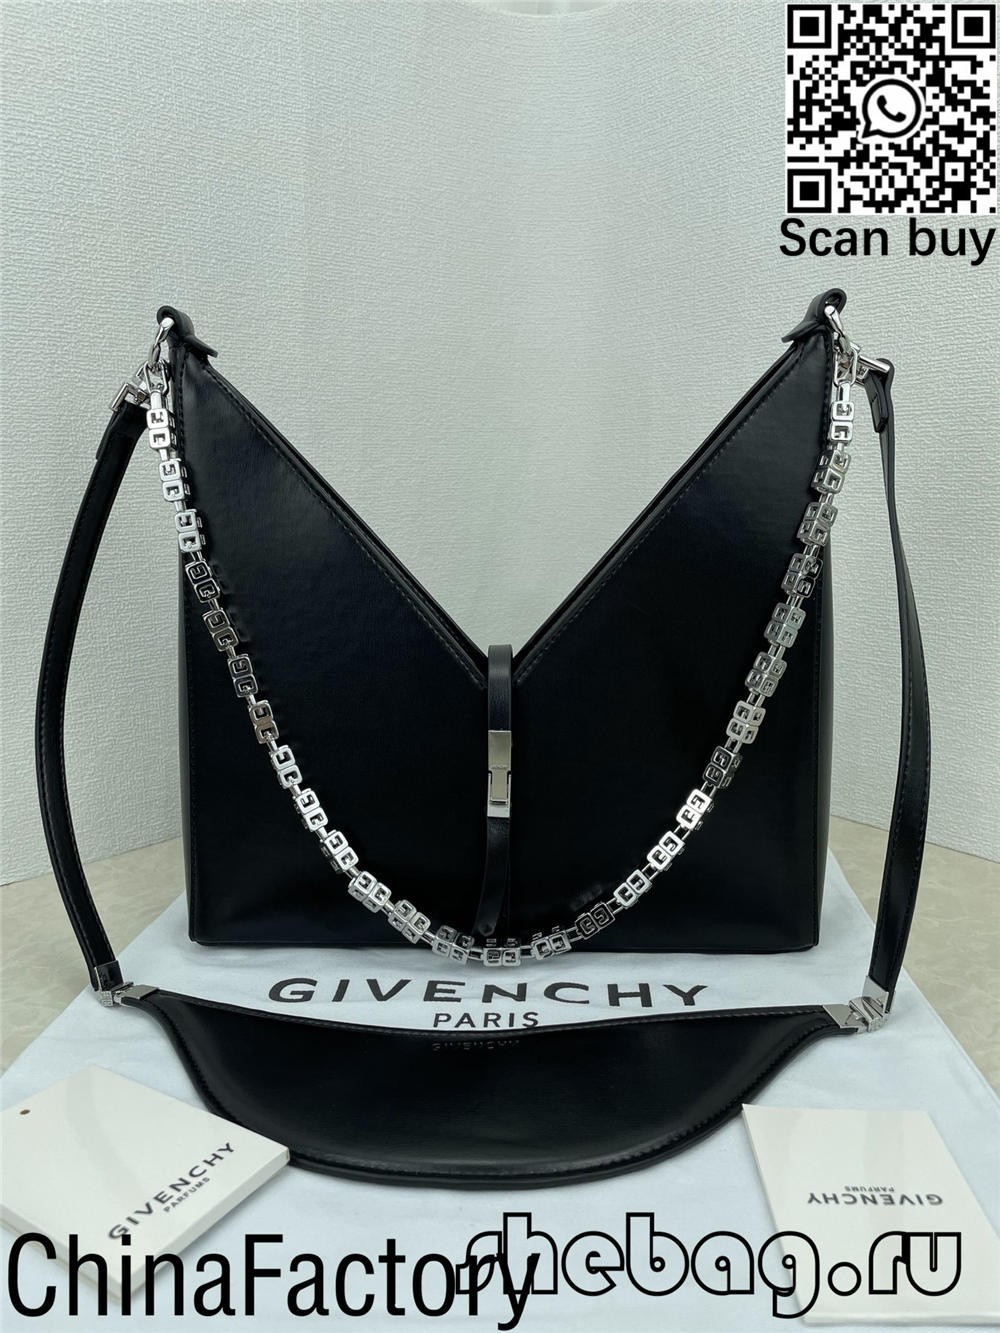 Givenchy အနက်ရောင်အိတ်ပုံတူ- Givenchy Cut-Out (2022 အပ်ဒိတ်လုပ်ထားသည်)- အကောင်းဆုံးအရည်အသွေးအတု Louis Vuitton Bag အွန်လိုင်းစတိုး၊ ပုံတူဒီဇိုင်နာအိတ် ru